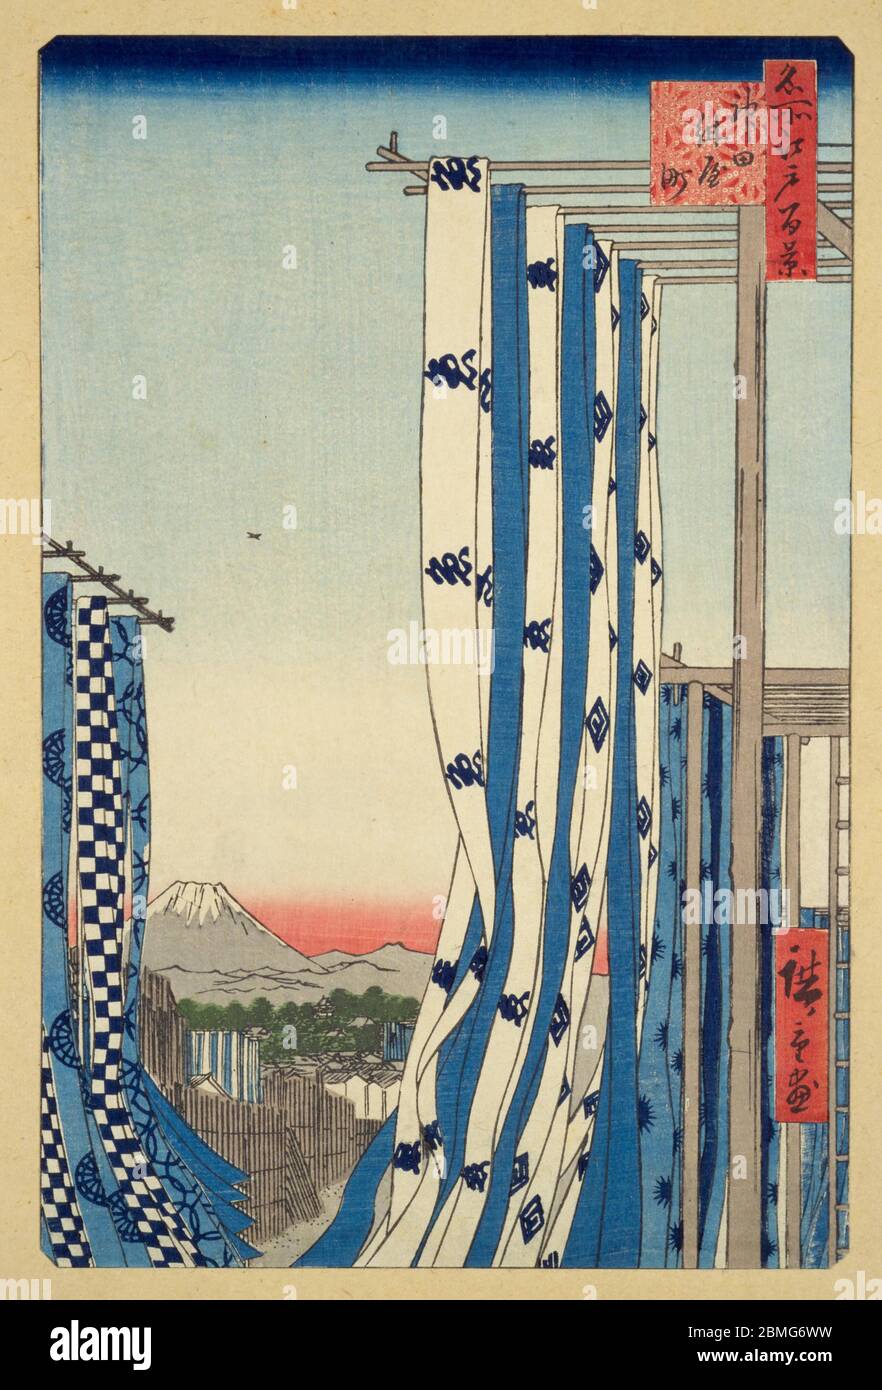 [ 1850er Japan - Trocknung gefärbter Textilien ] - Trocknung gefärbter Schrauben von Stoffen im Kanda-Bezirk Edo (derzeit Tokio), 1857 (Ansei 4). Im Hintergrund ist der Fuji-Berg zu sehen. Dieser Holzschnitt ist Bild 75 in hundert berühmten Ansichten von Edo (名所江戸百景, Meisho Edo Hyakkei), einer Serie von Ukiyoe Künstler Utagawa Hiroshige (歌川広重, 1797–1858) erstellt. Es ist eine von 26 Herbstszenen der Serie. Titel: Das Viertel der Dyers in Kanda (神田紺屋町, Kanda konya-Cho) Vintage Ukiyoe Holzschnitt aus dem 19. Jahrhundert. Stockfoto